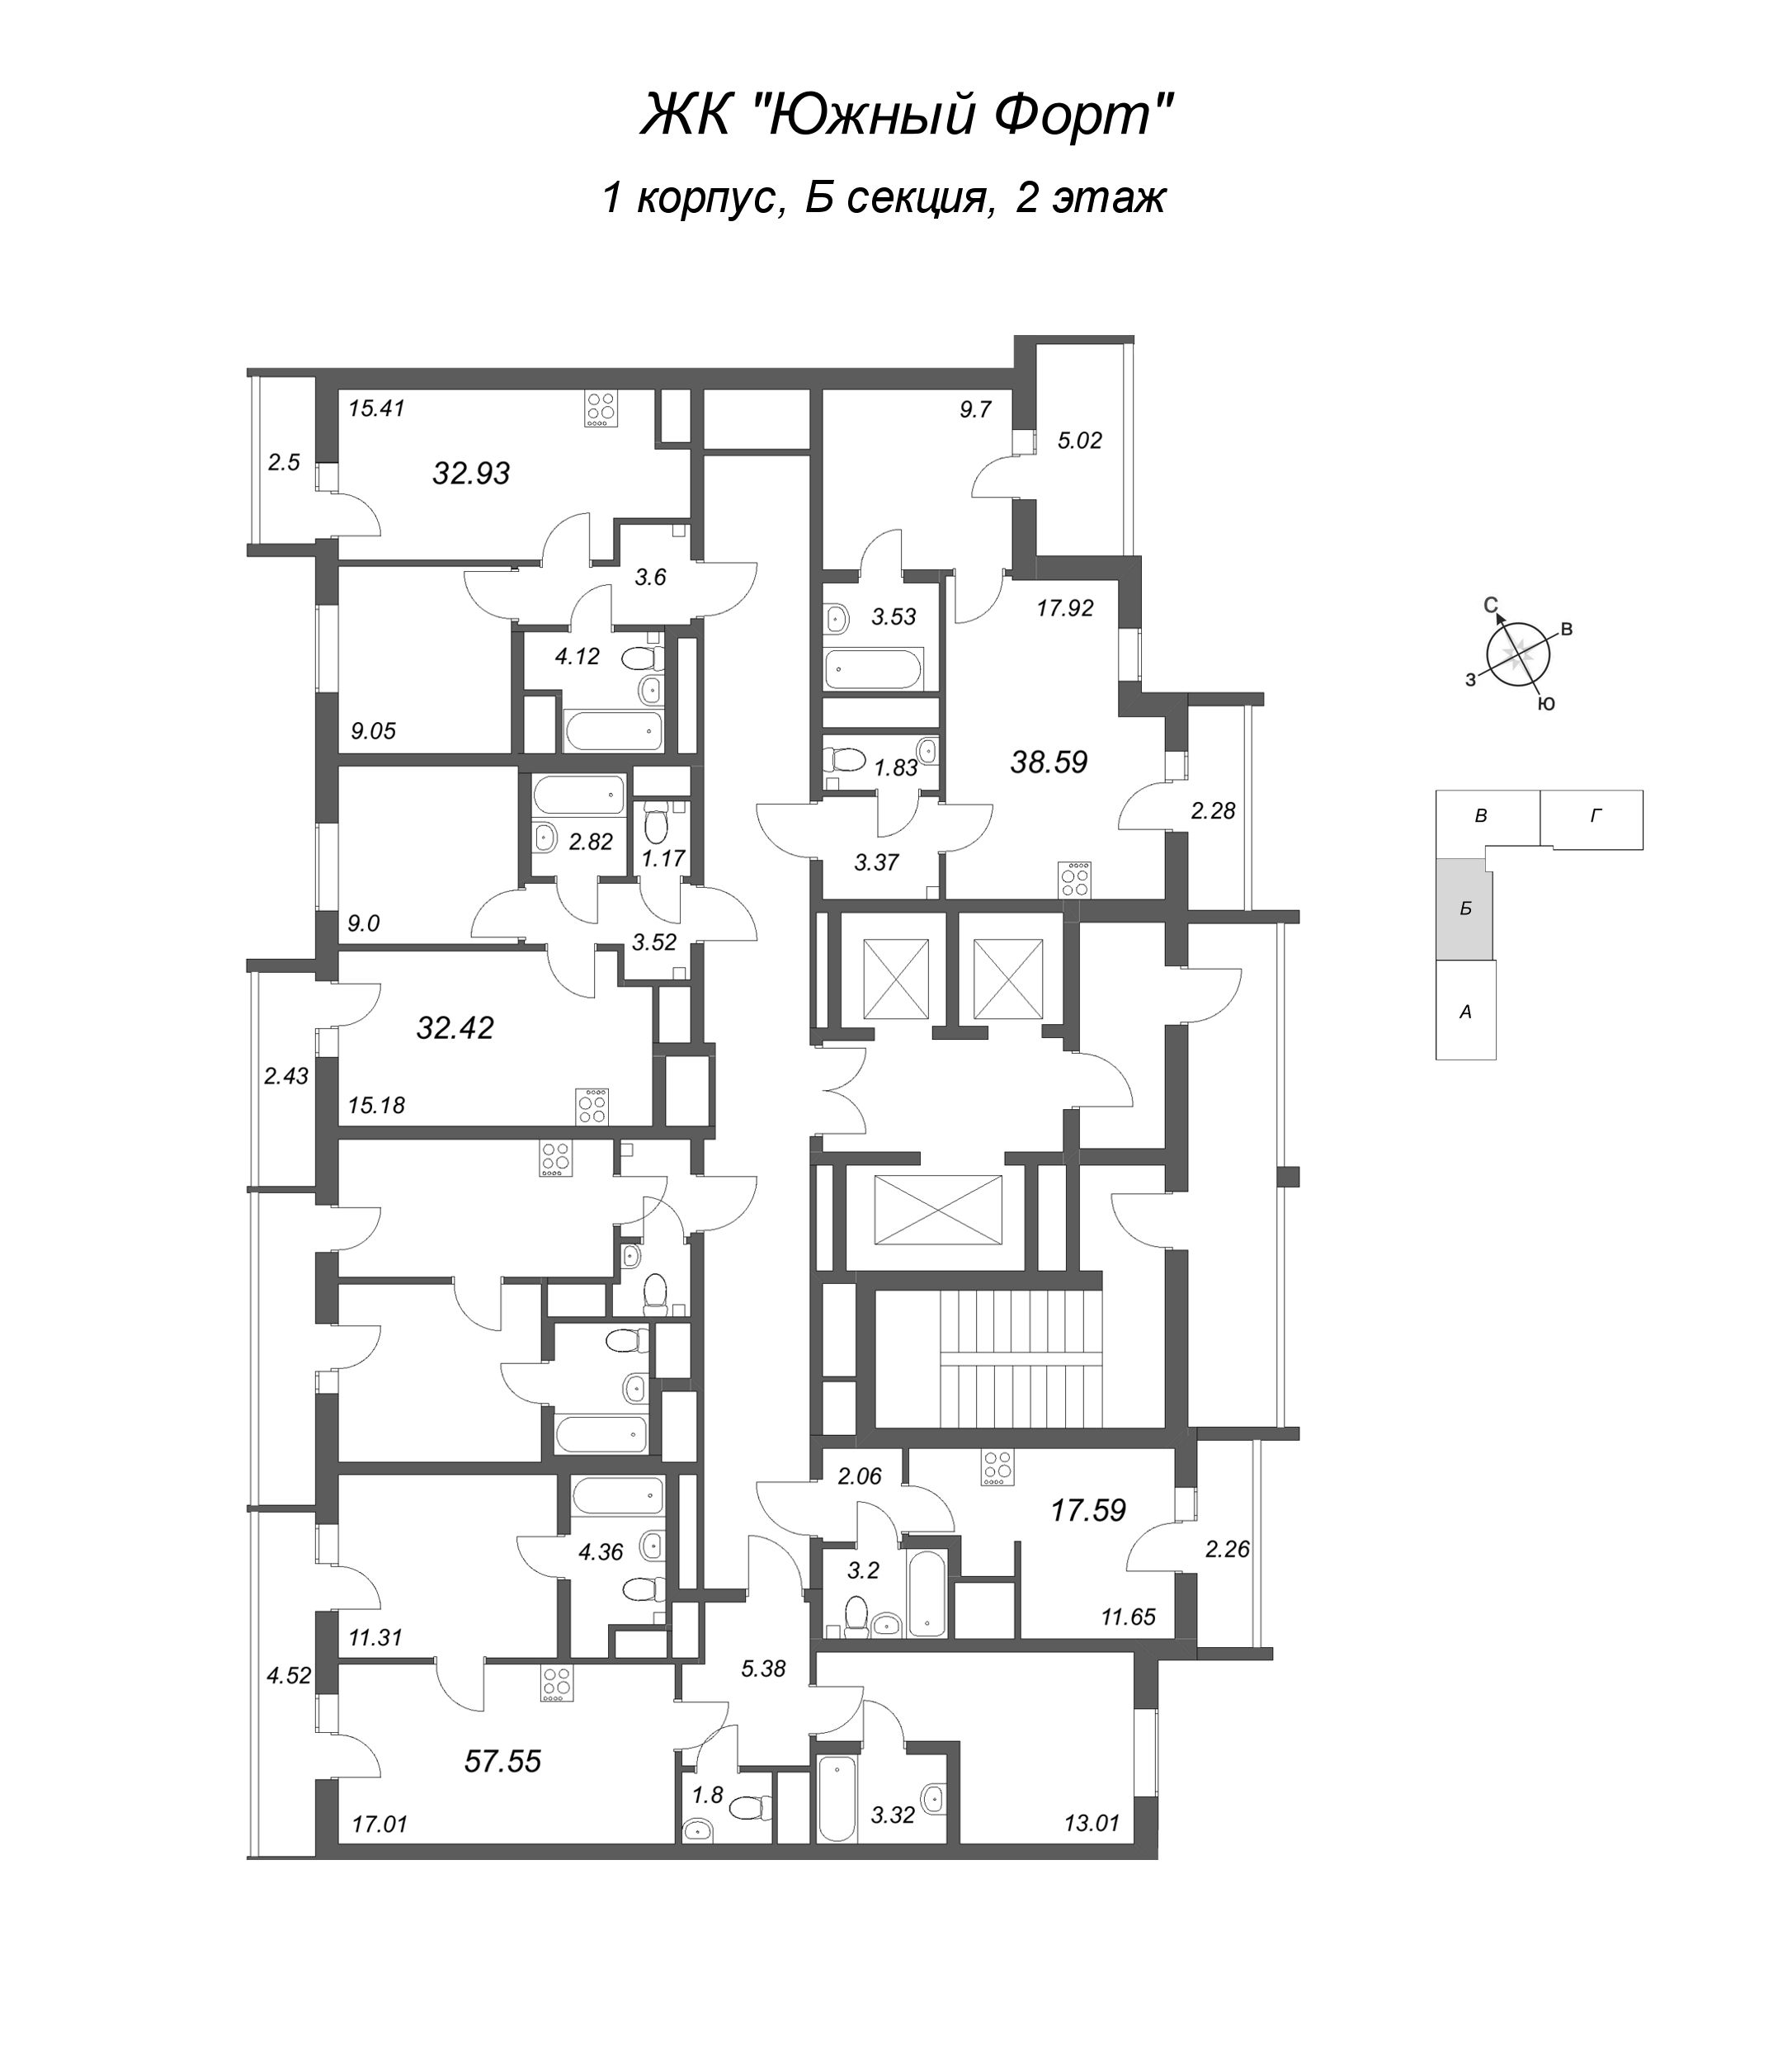 2-комнатная (Евро) квартира, 32.42 м² в ЖК "Южный форт" - планировка этажа